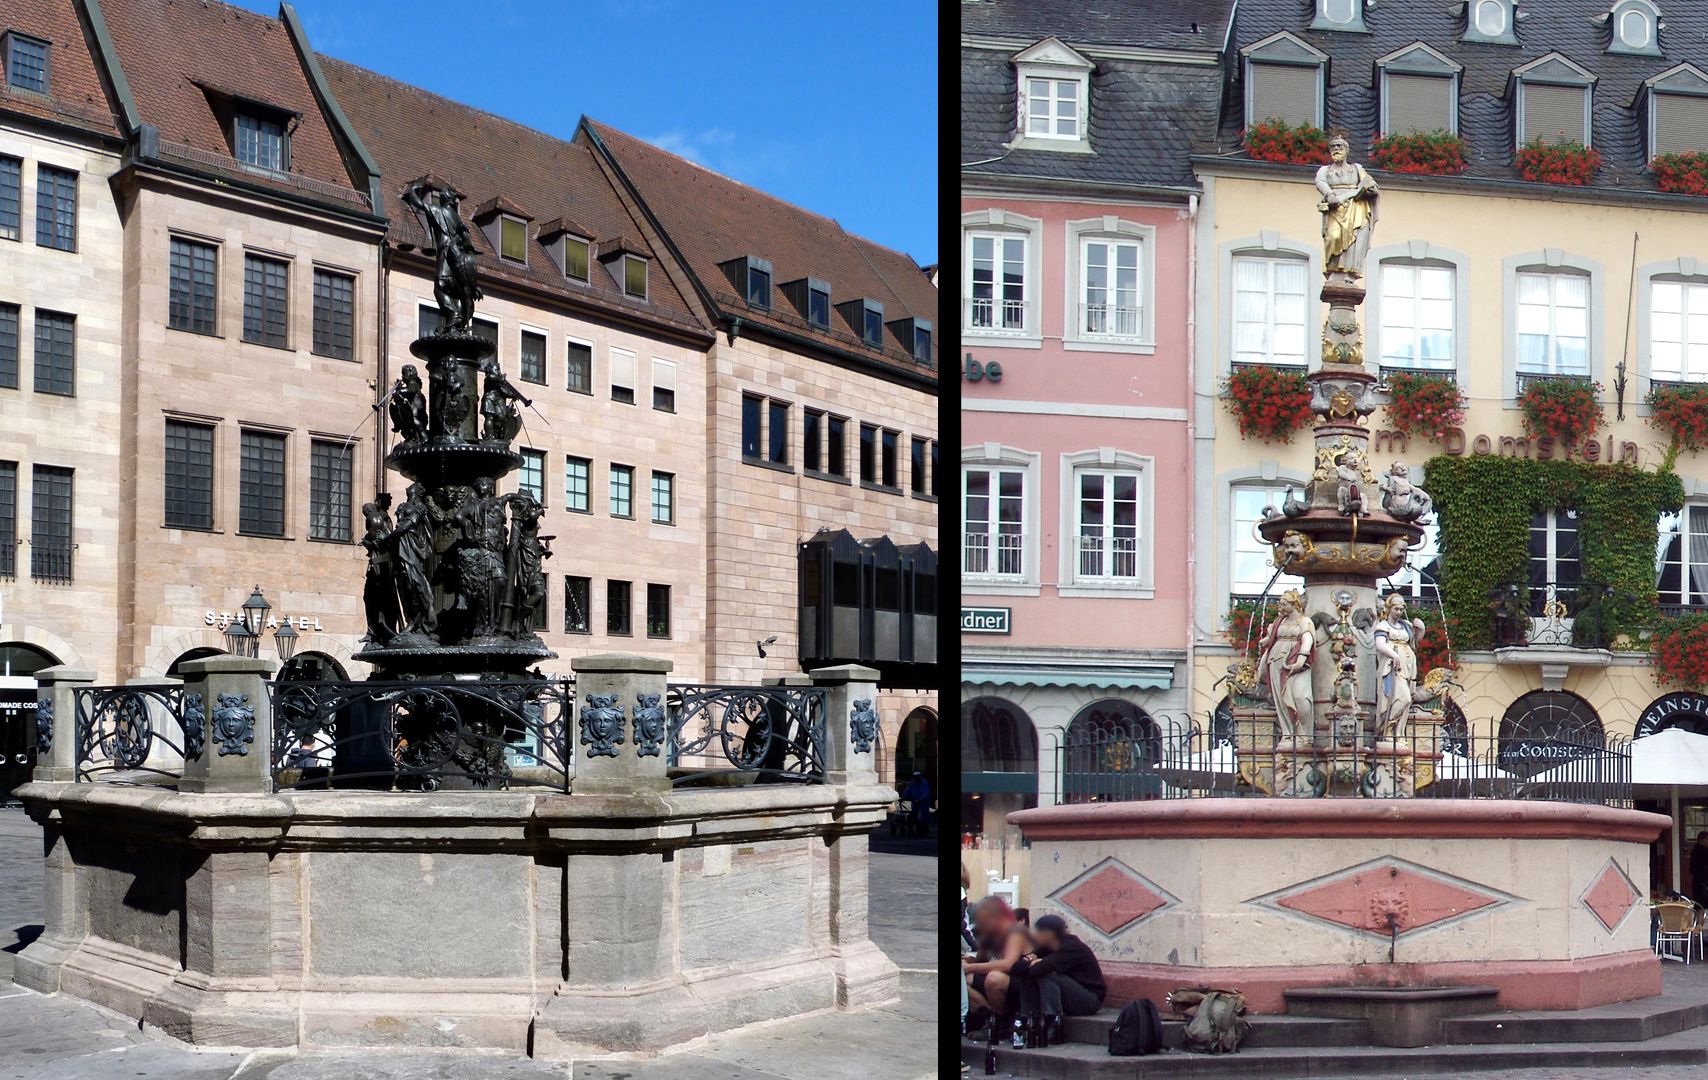 Tugendbrunnen Bildvergleich mit dem Marktbrunnen (1595) in Trier, ausgeführt von Hans Ruprecht Hoffmann nach dem Vorbild des Tugendbrunnens